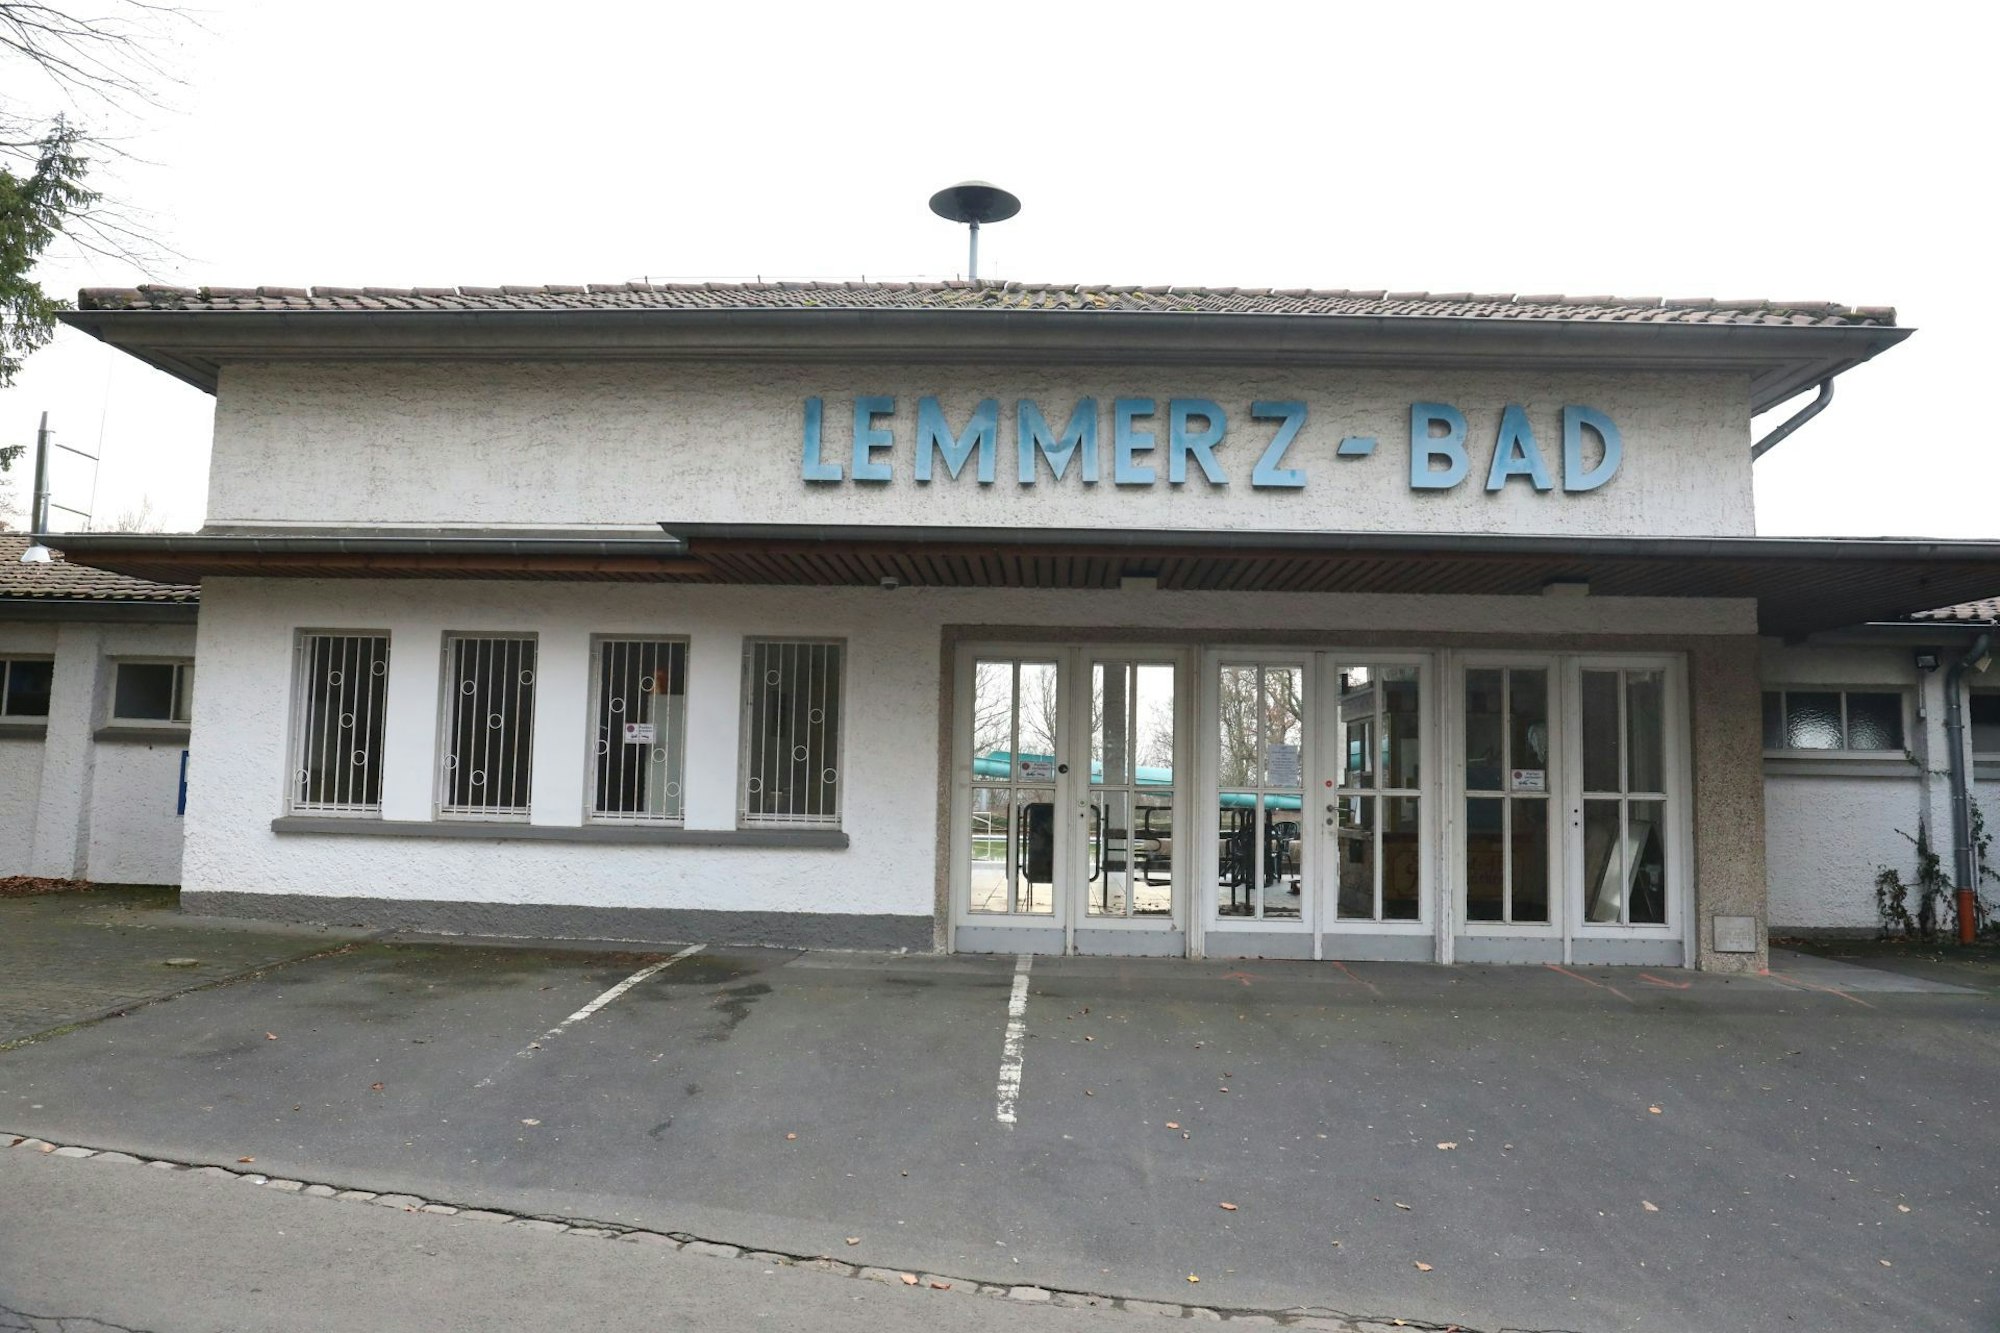 Lemmerz-Bad steht in großen blauen Lettern über dem Eingangsgebäude des Königswinterer Freibades.